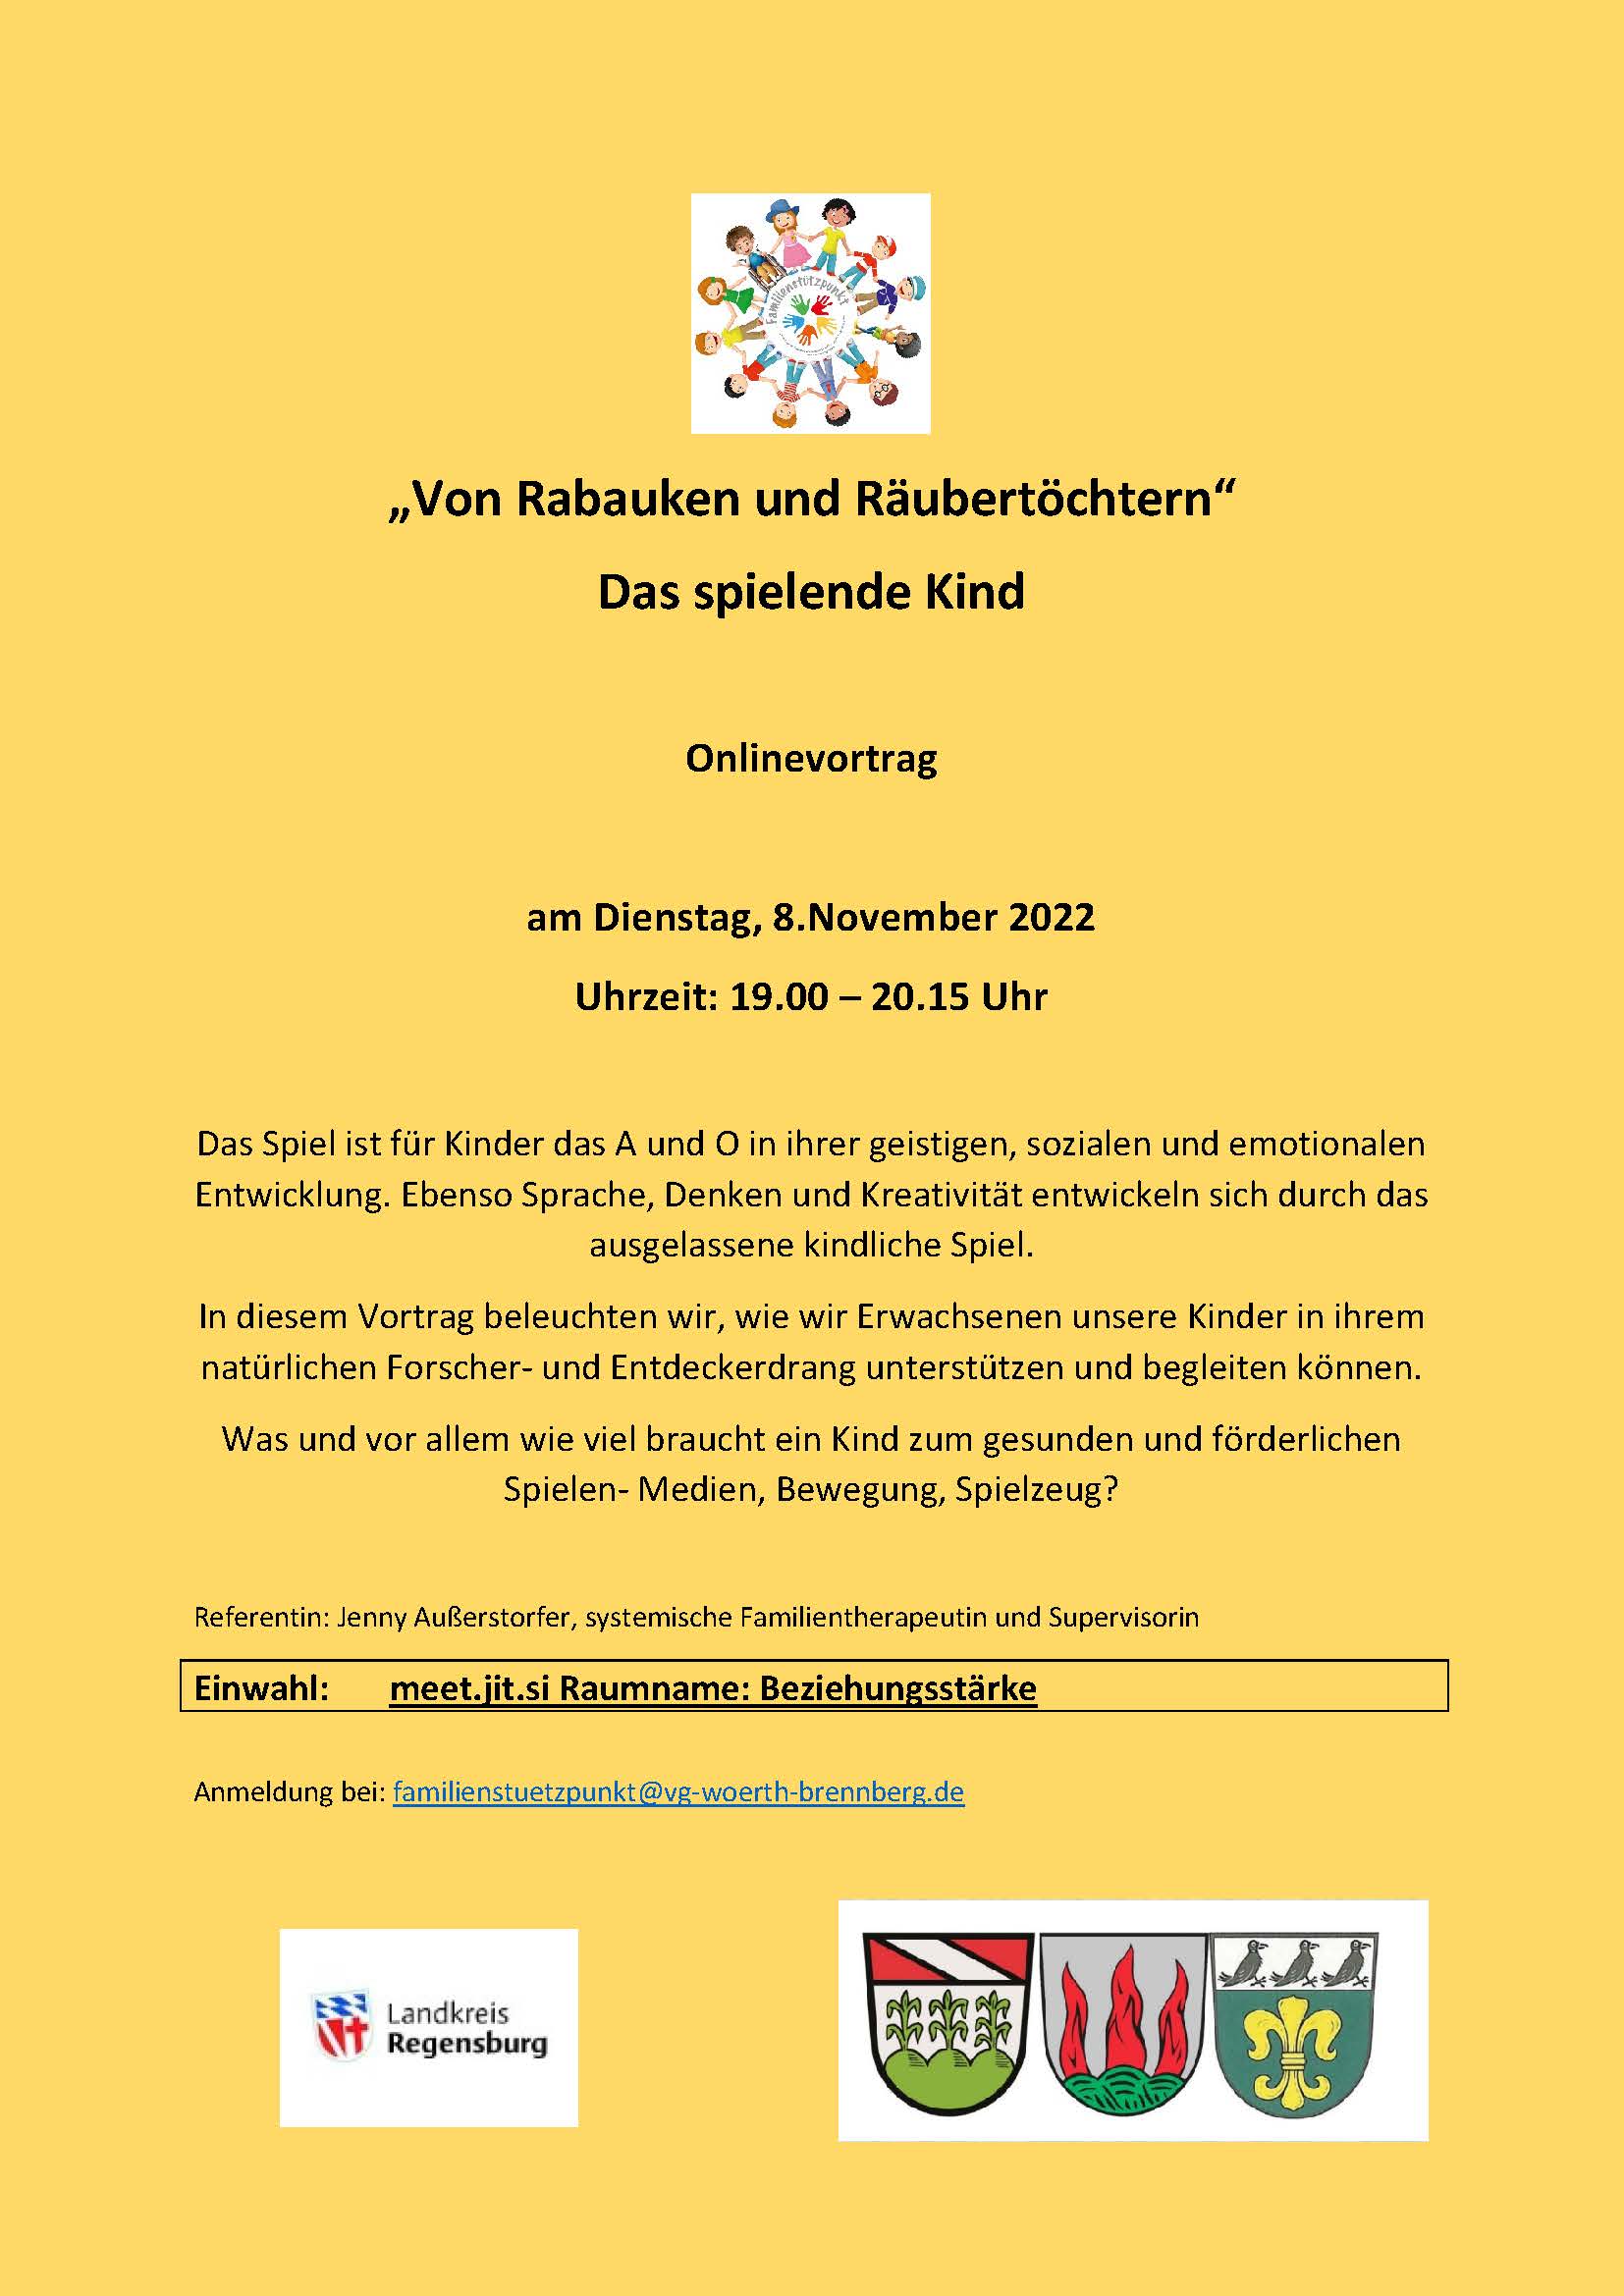 Online Vortrag -  Von Rabauken und  Räubertöchtern am 8.11.2022